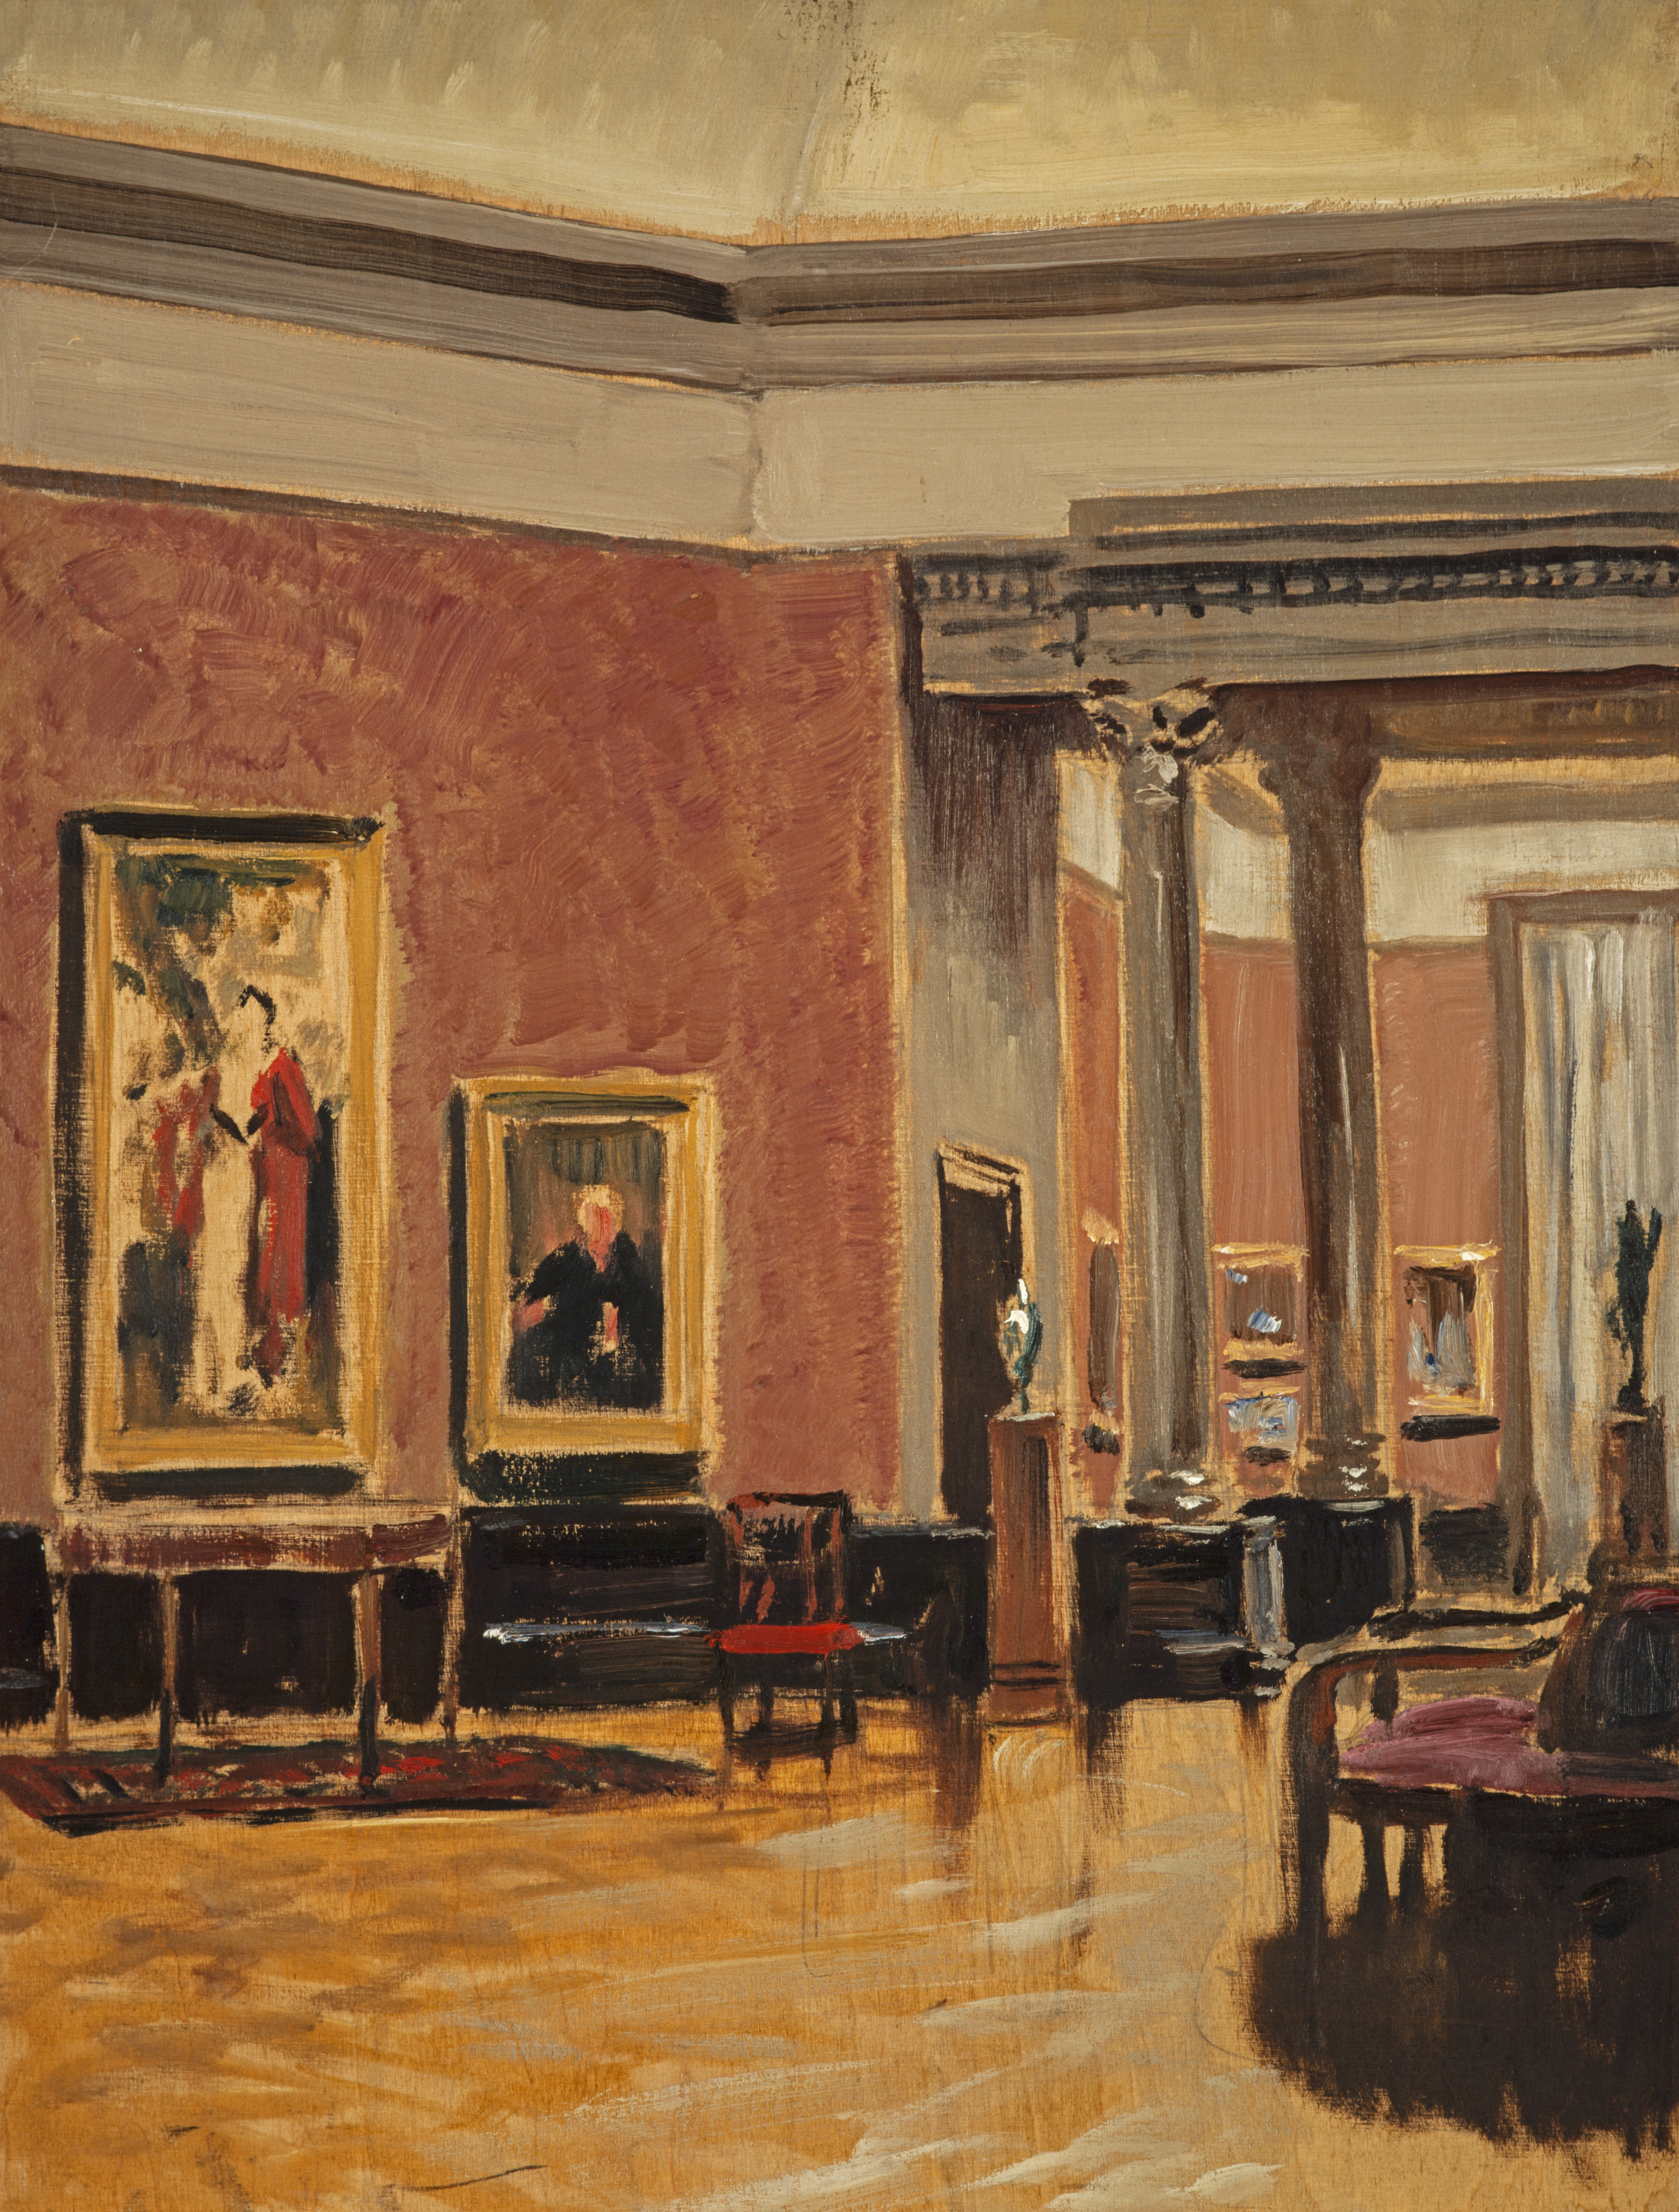 스코틀랜드 국립미술관의 내부 (The Interior of the National Gallery of Scotland) by Stanley Cursiter - 1938년 경 - 40.5 x 30.5 cm 